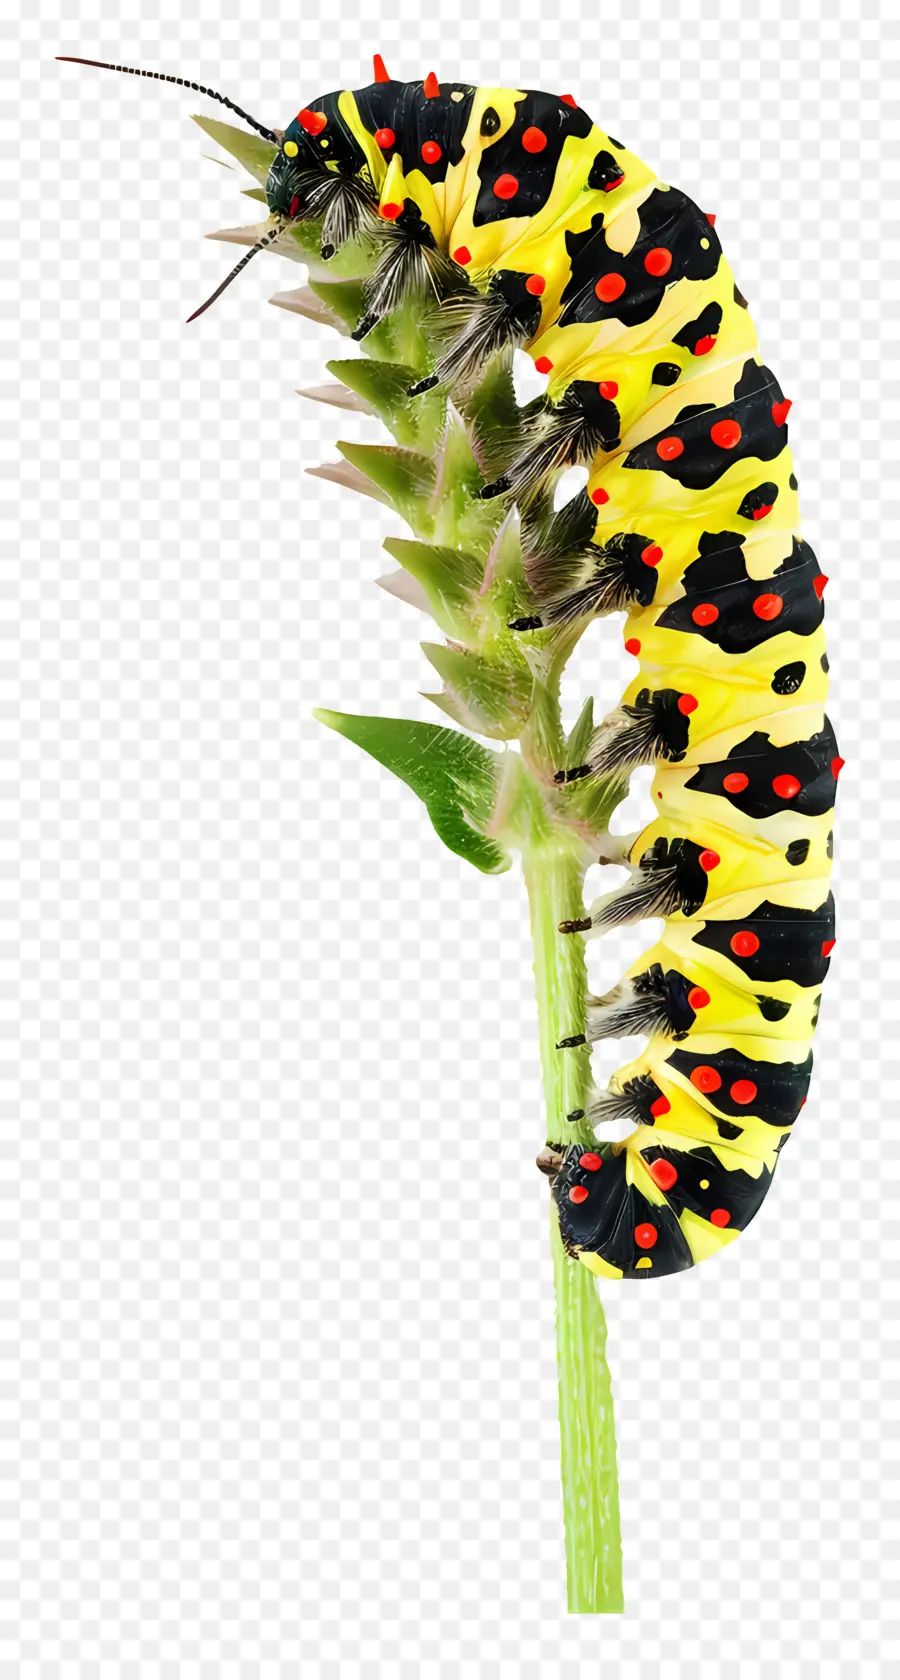 Insetti Caterpillar Garden Nature Wildlife - Grande bruco con macchie gialle, nere e rosse